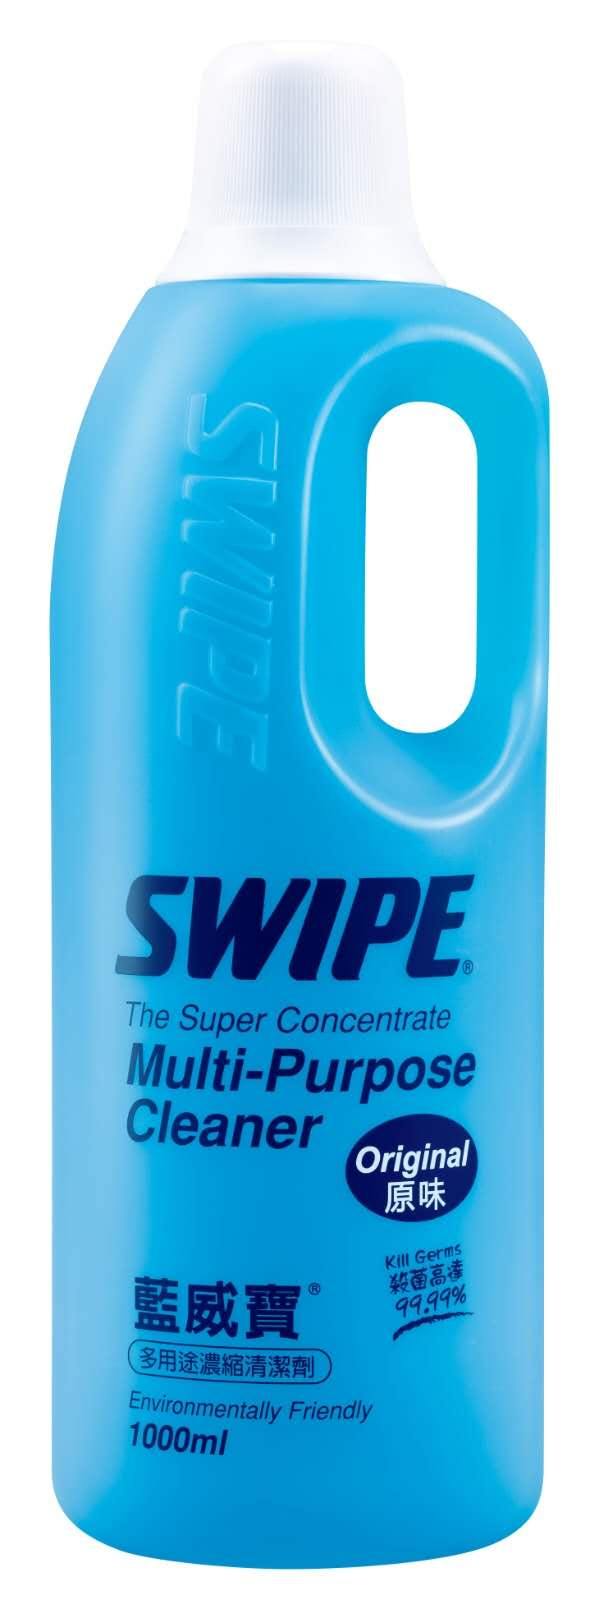 威寶Swipe - 藍威寶多用途濃縮清潔劑 (原味) - 1000ml -  Mango Store